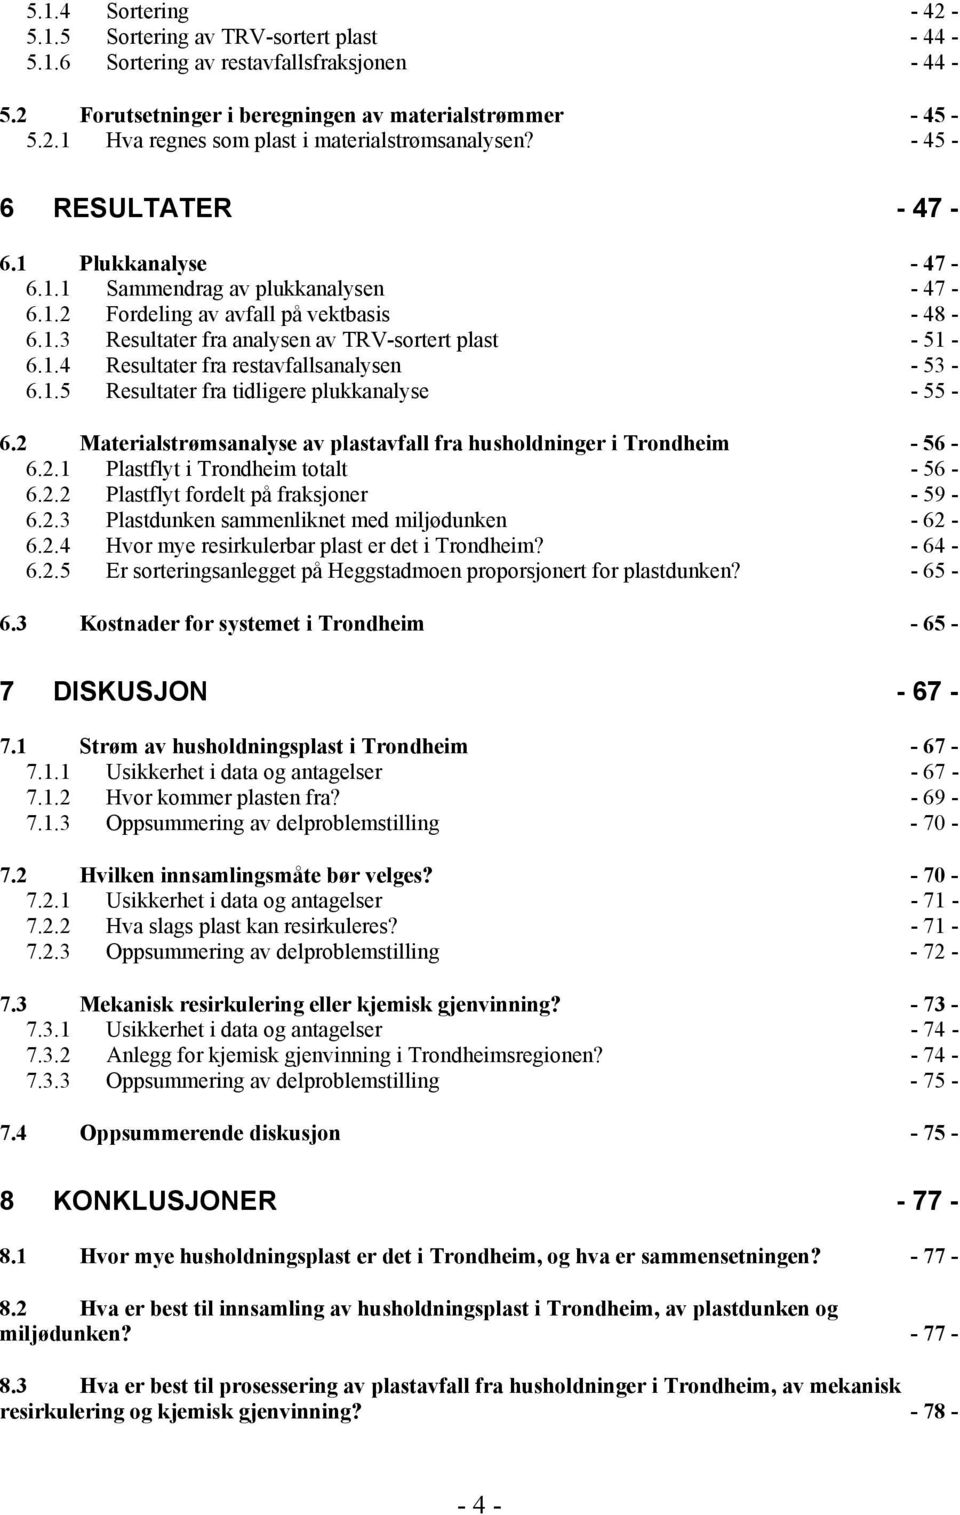 1.5 Resultater fra tidligere plukkanalyse - 55-6.2 Materialstrømsanalyse av plastavfall fra husholdninger i Trondheim - 56-6.2.1 Plastflyt i Trondheim totalt - 56-6.2.2 Plastflyt fordelt på fraksjoner - 59-6.